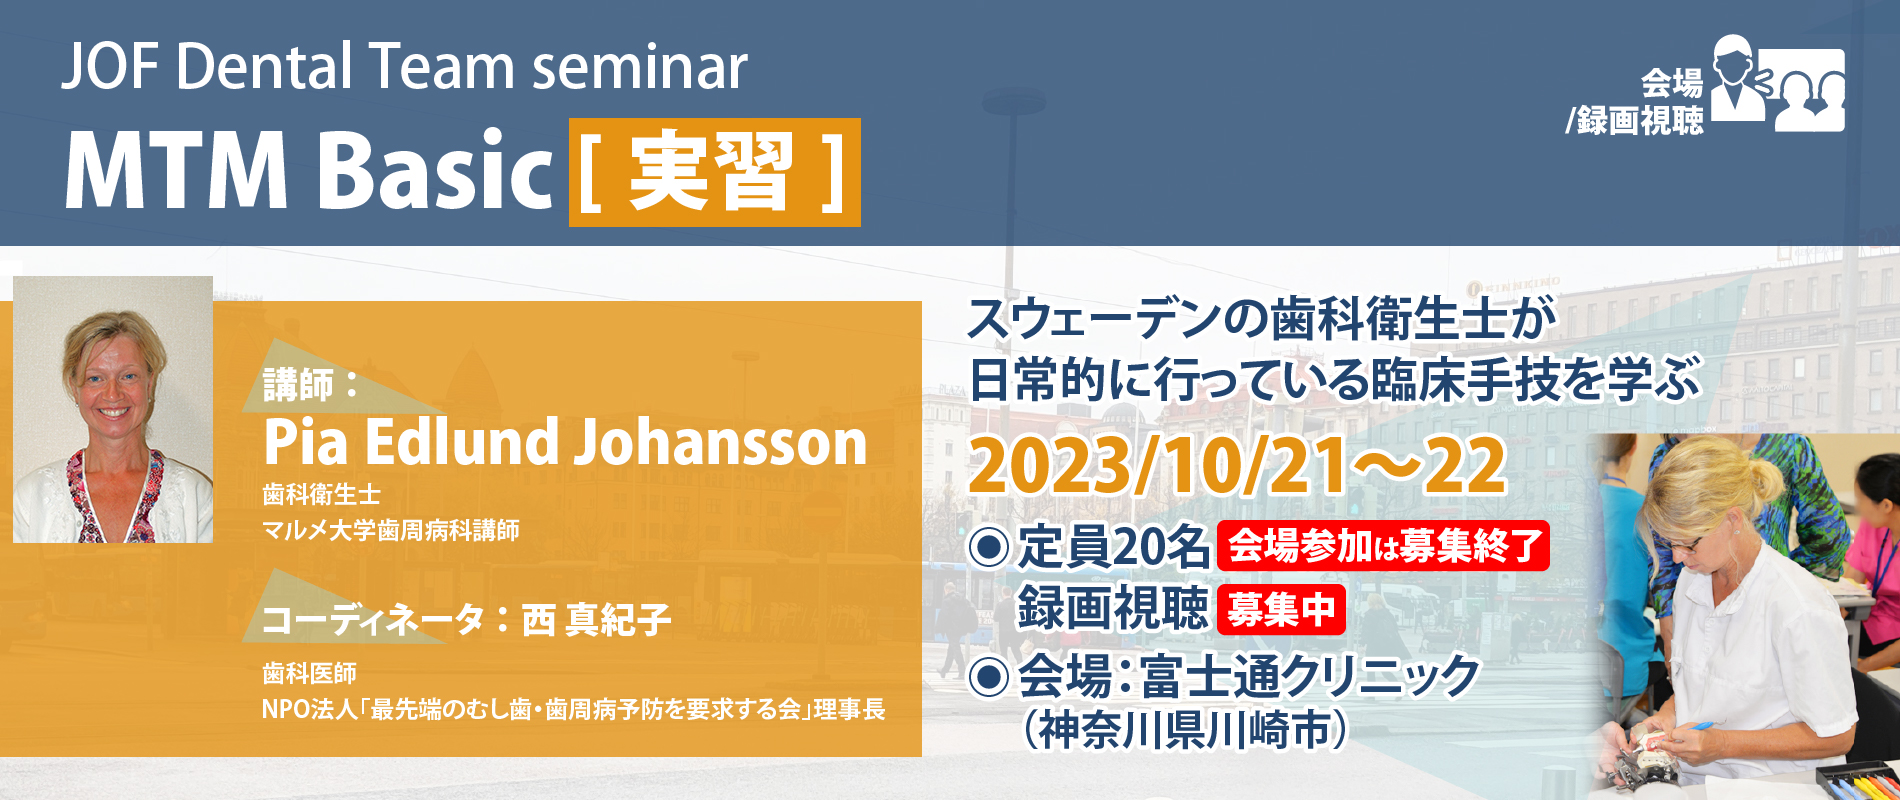 JOF Dental Team Seminar｜MTM-Basic〔実習〕 – 一般社団法人JOF